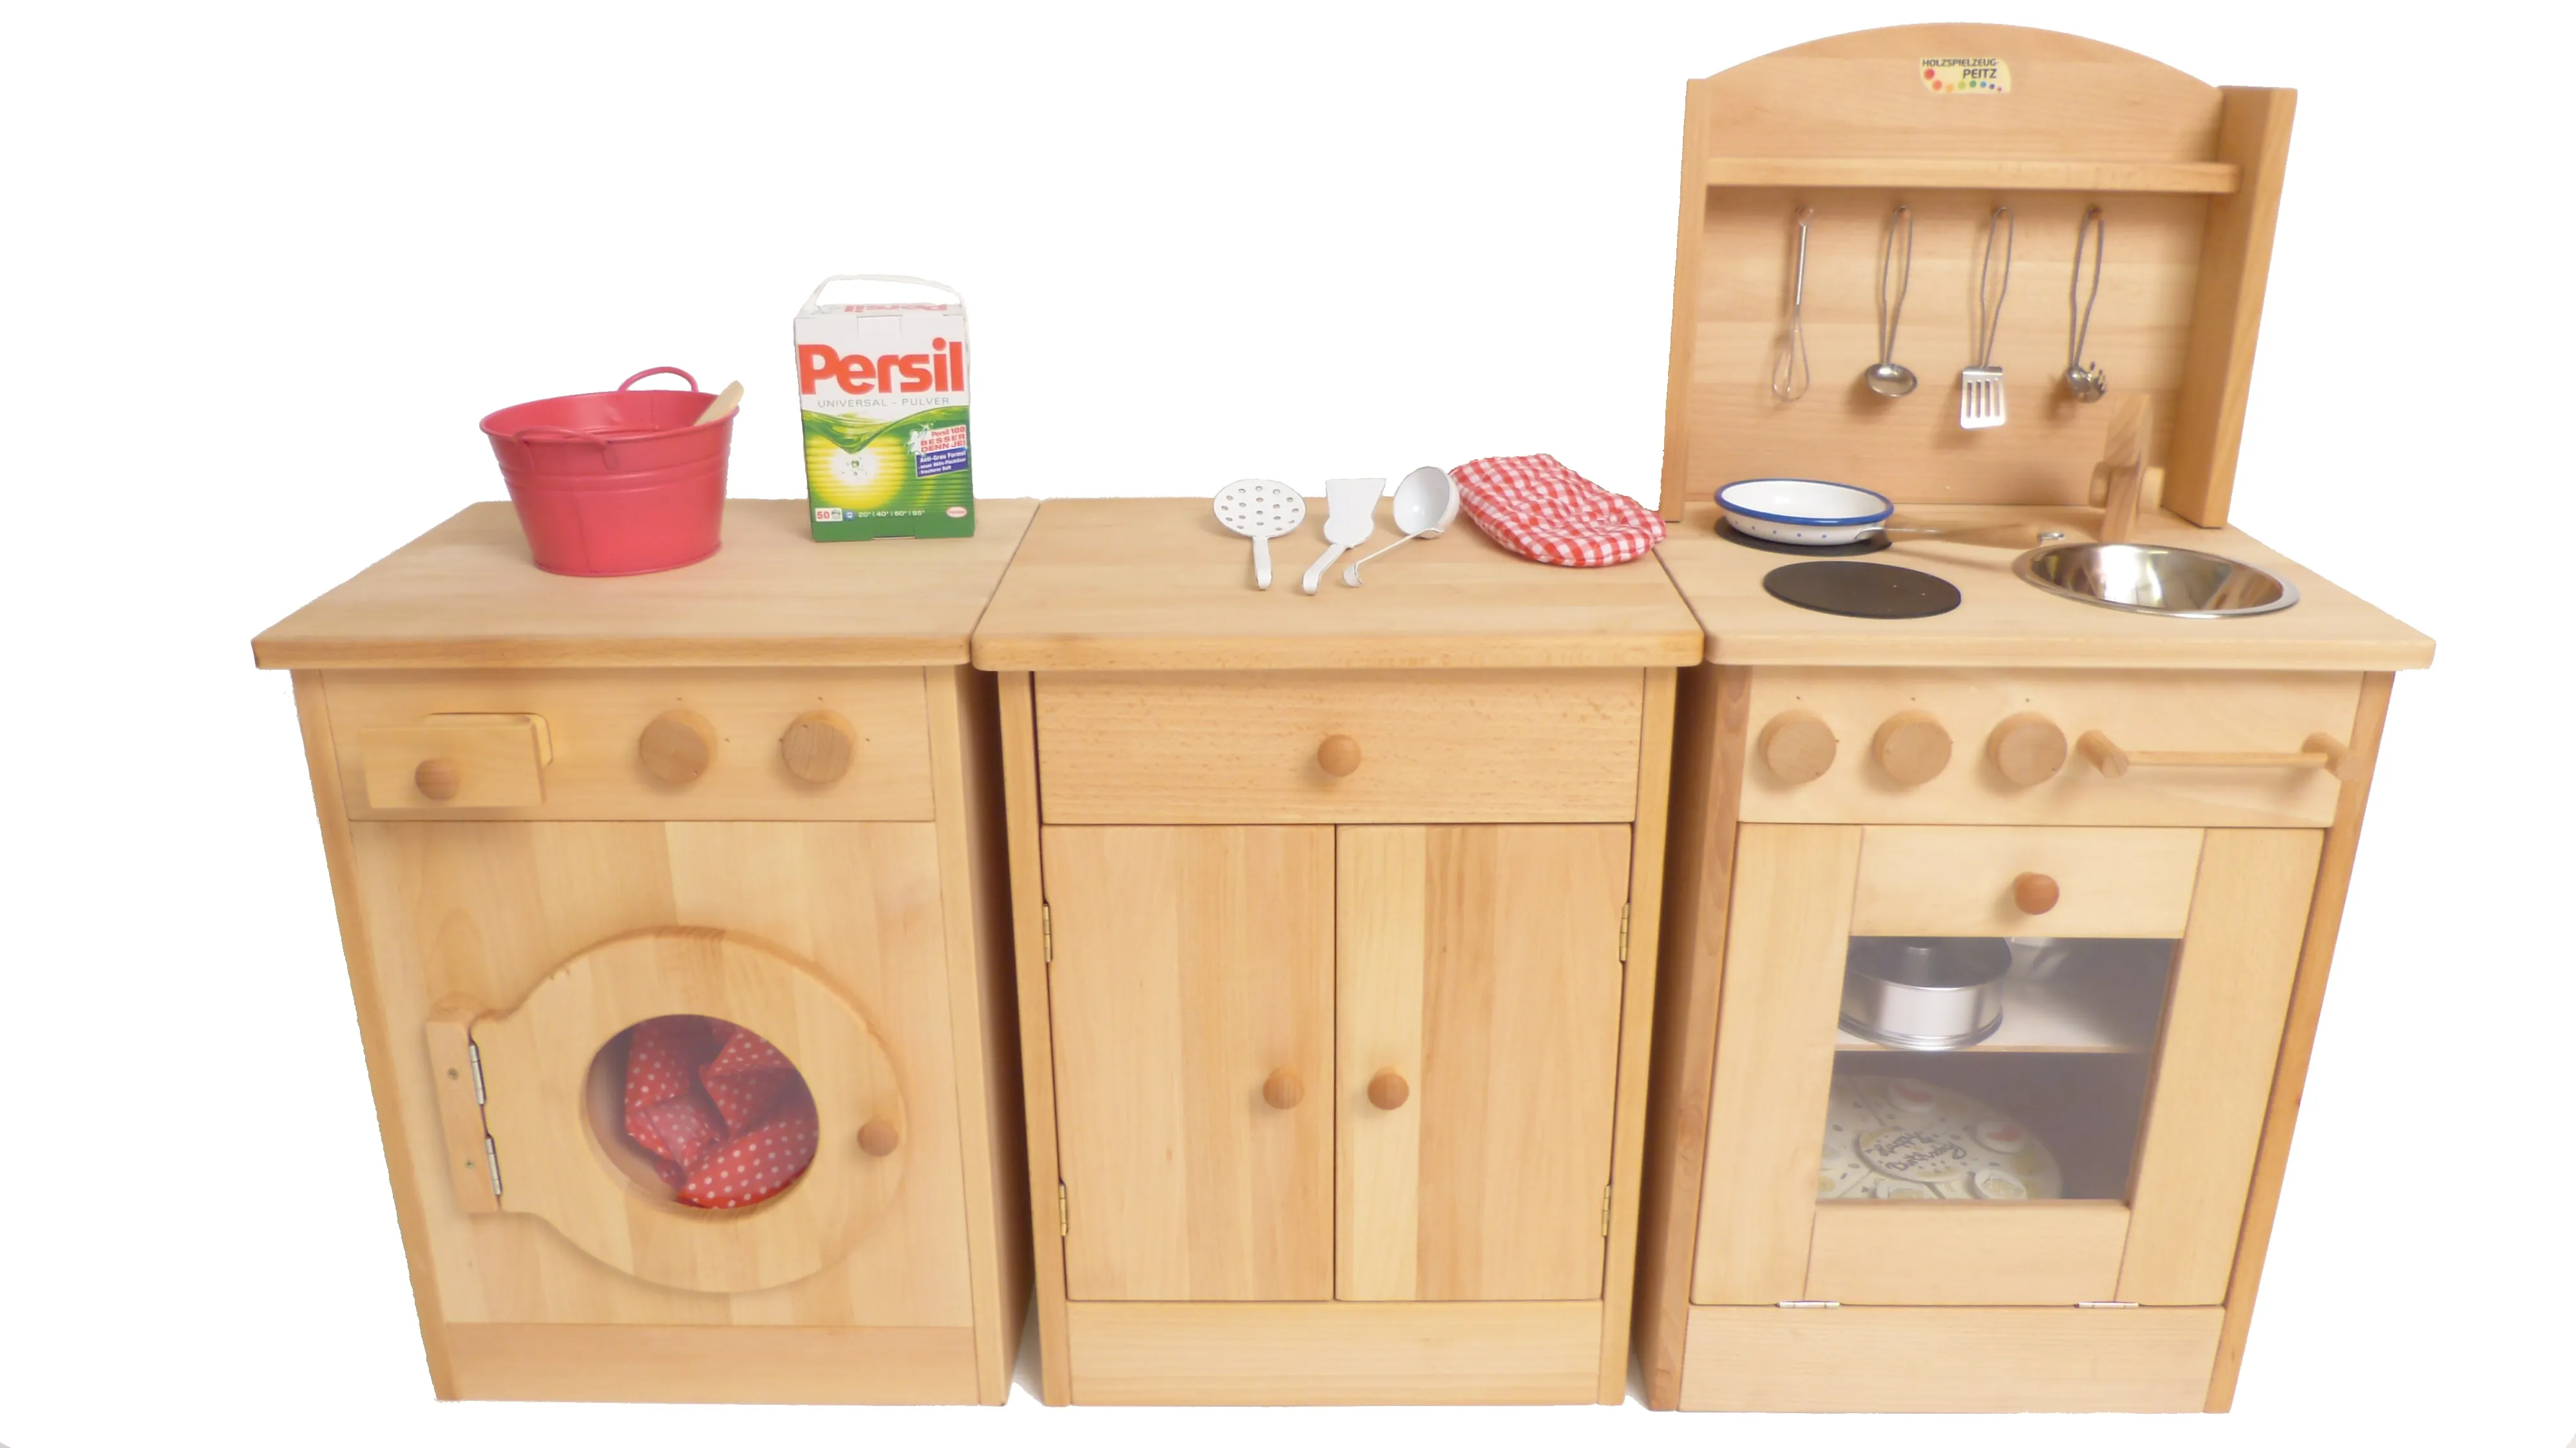 Holz-Küchenzeile für Kinder mit je einer Waschmaschine, einem Schrank und einem Küchenherd mit Backofen.